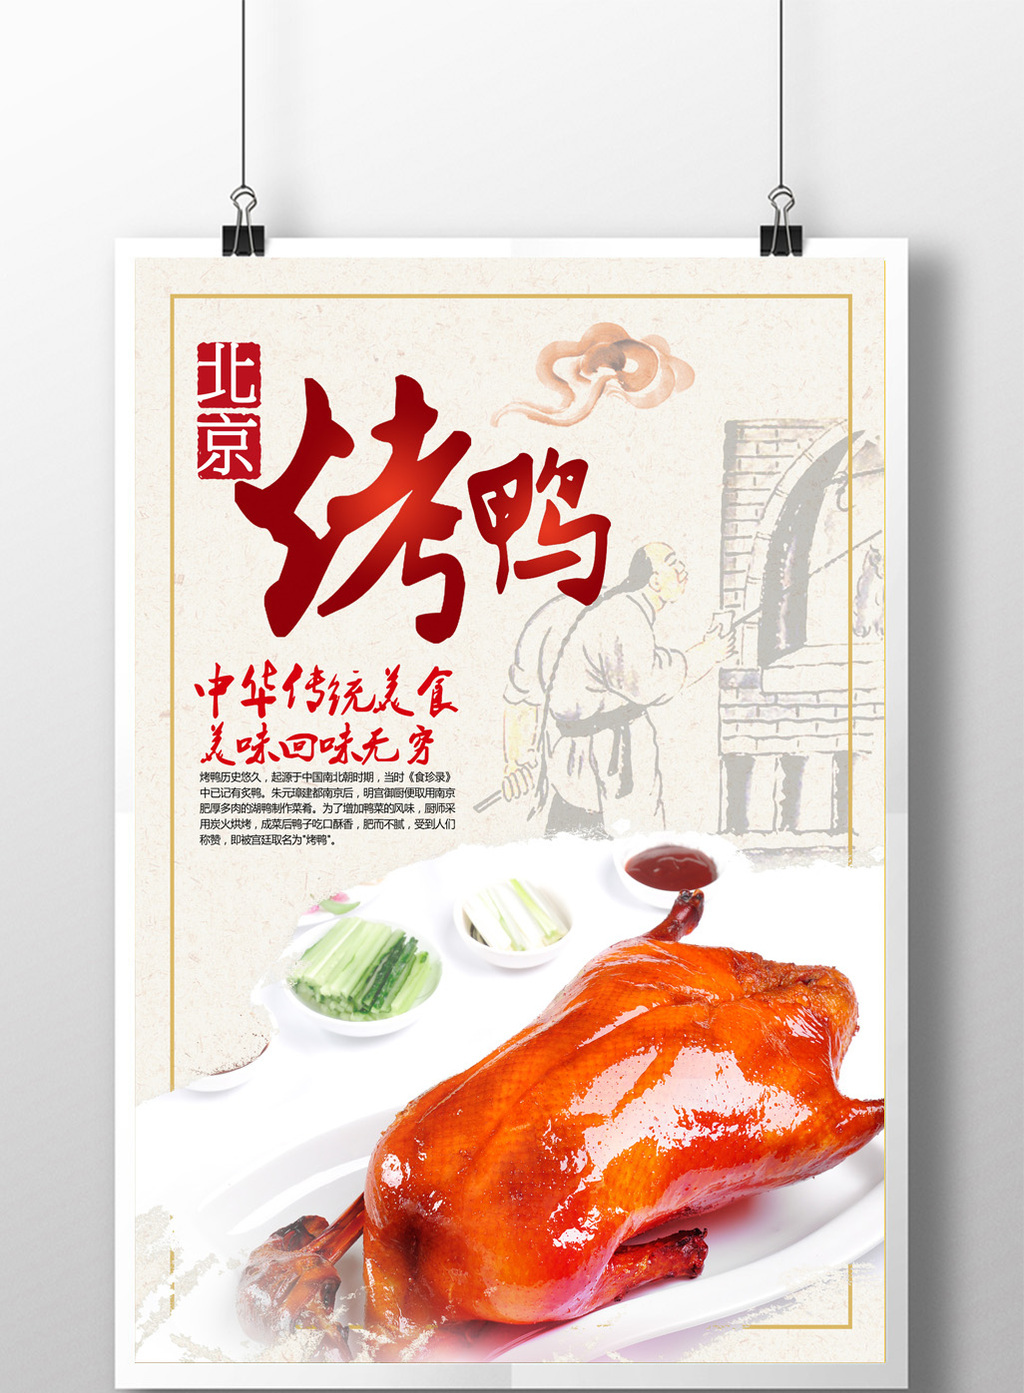 包图 广告设计 海报 【psd】 中华美食北京烤鸭  所属分类: 广告设计